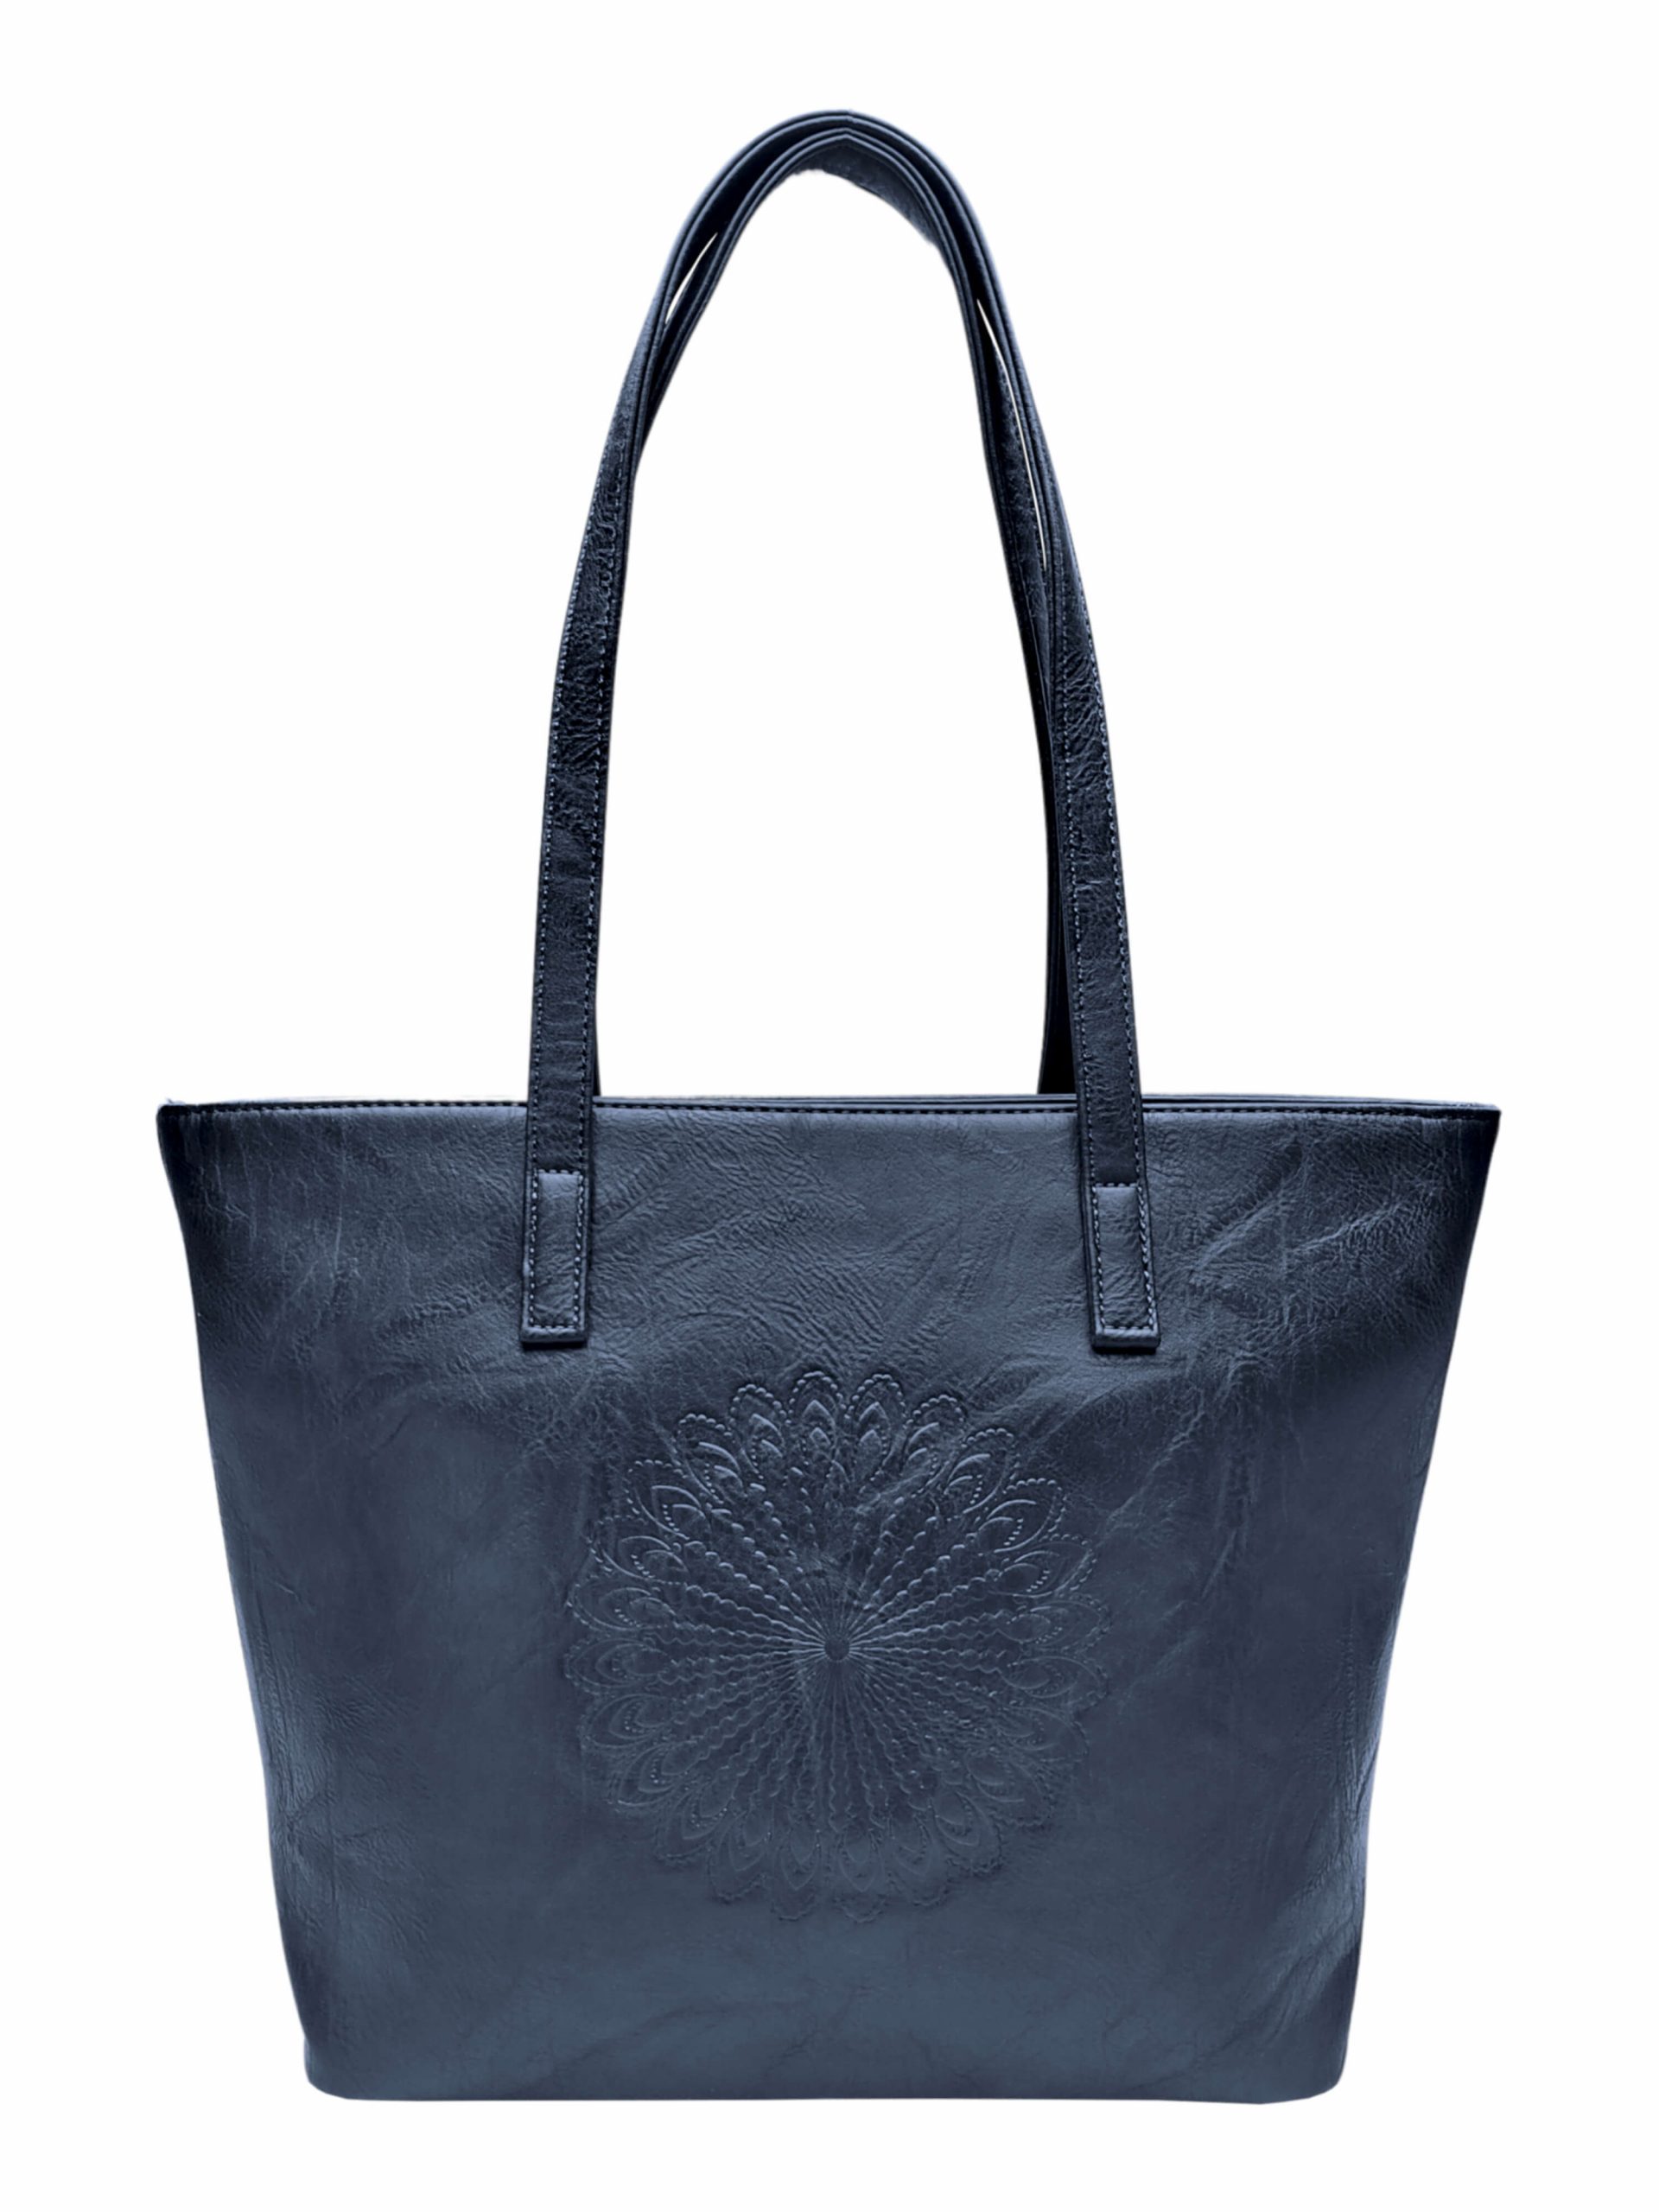 Tmavě modrá dámská kabelka přes rameno se vzorem, Tapple, H17409N, zadní strana kabelky